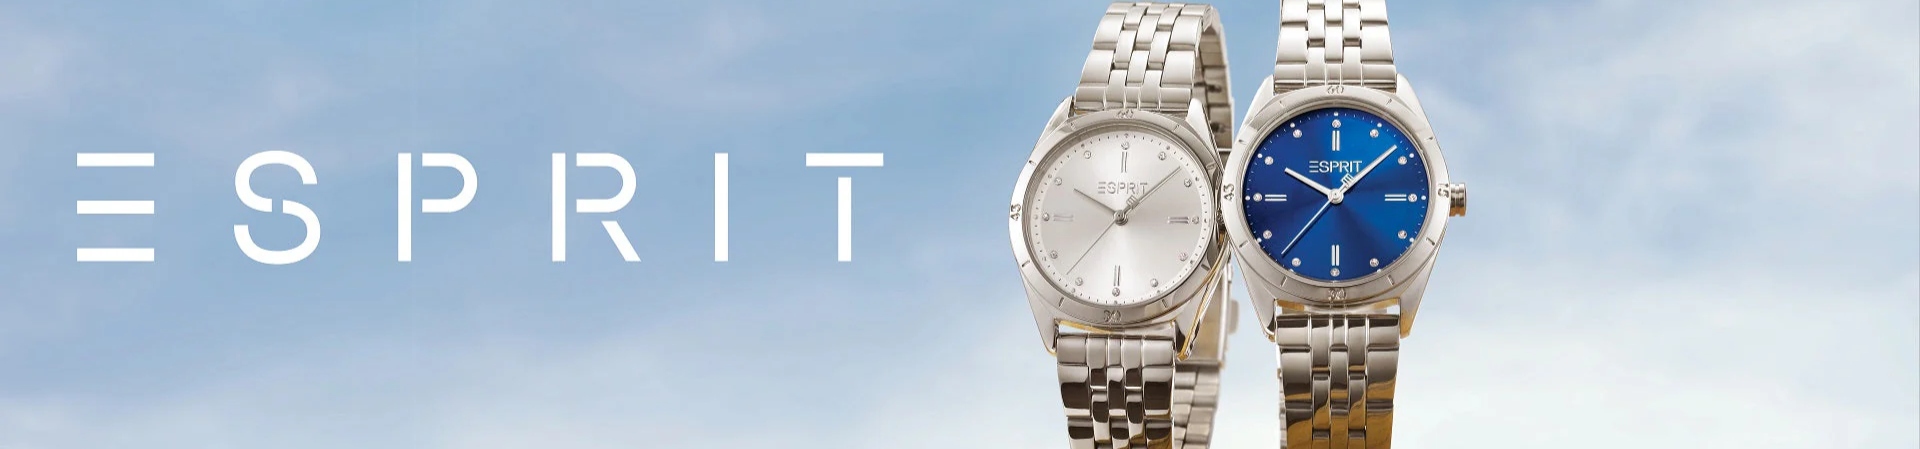 ساعت های برند اسپرایت Esprit - گالری ساعت حافظی - بنر صفحه اصلی